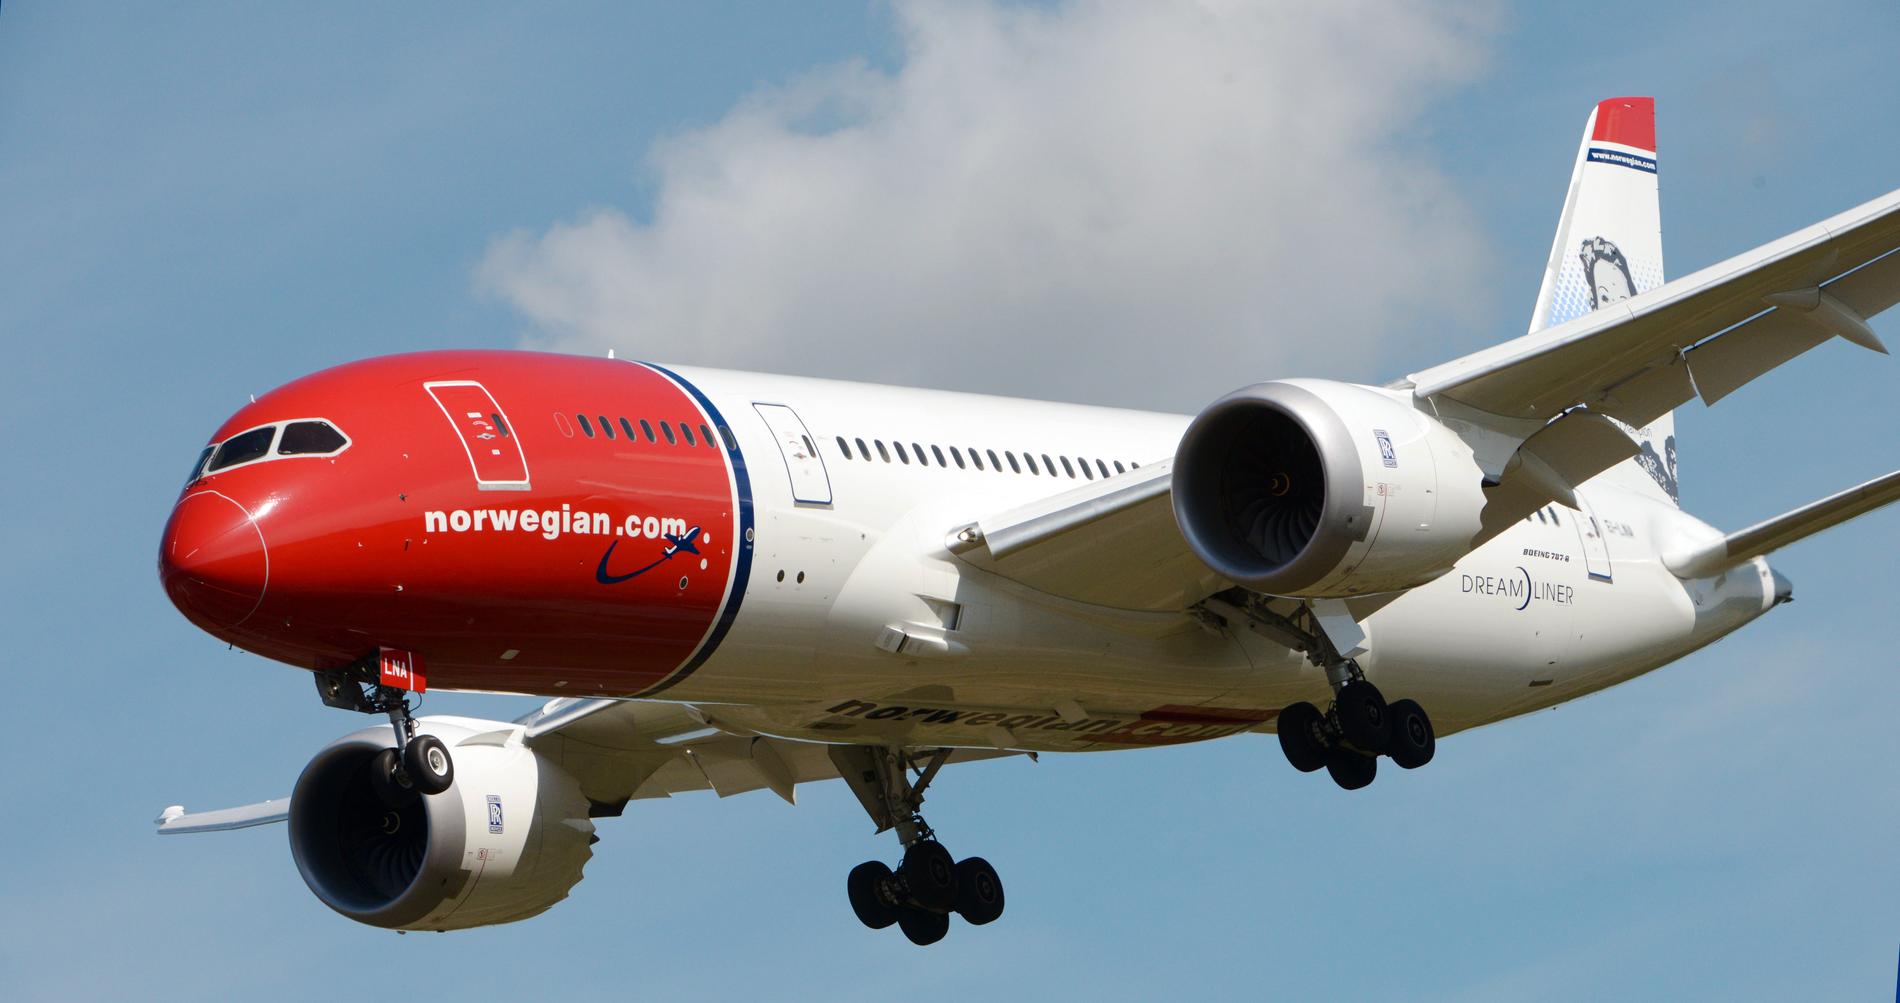 Norwegianplanet mot New York skulle ha lyft från Arlanda 17.35 i går. Men det blev aldrig någon resa.